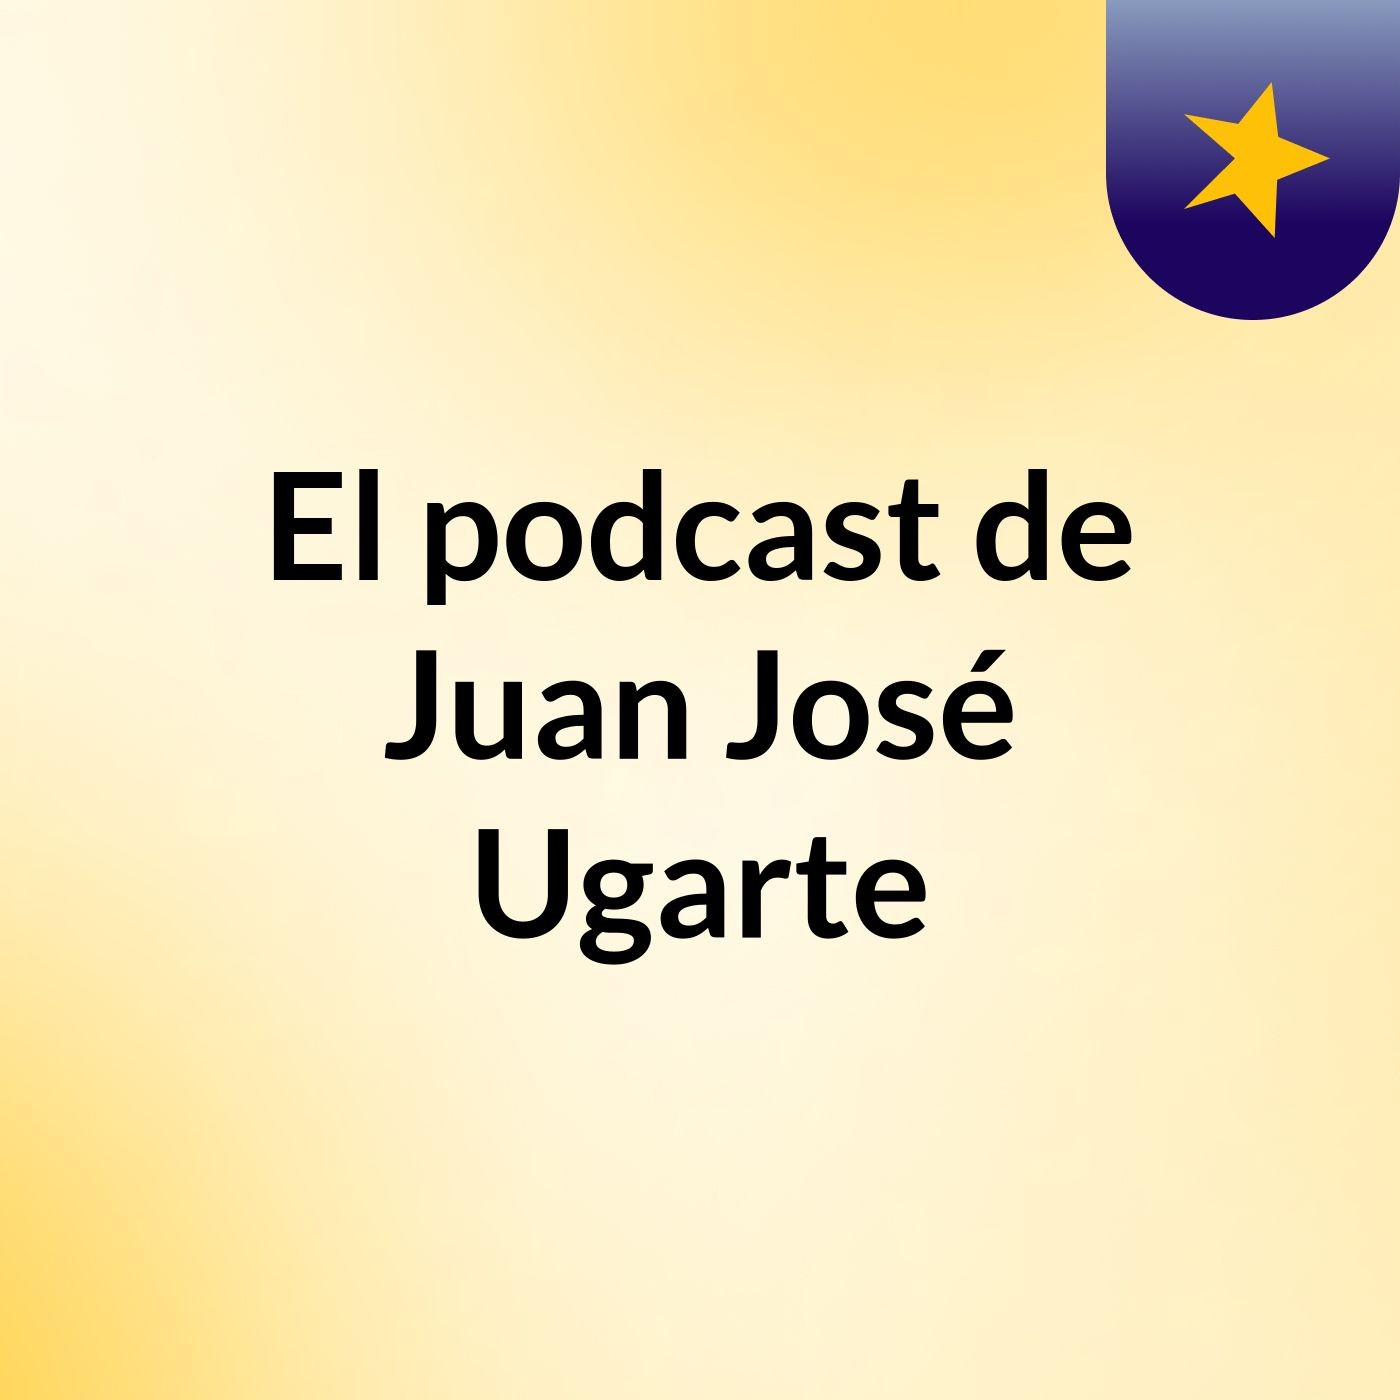 Episodio 4 - El podcast de Juan José Ugarte